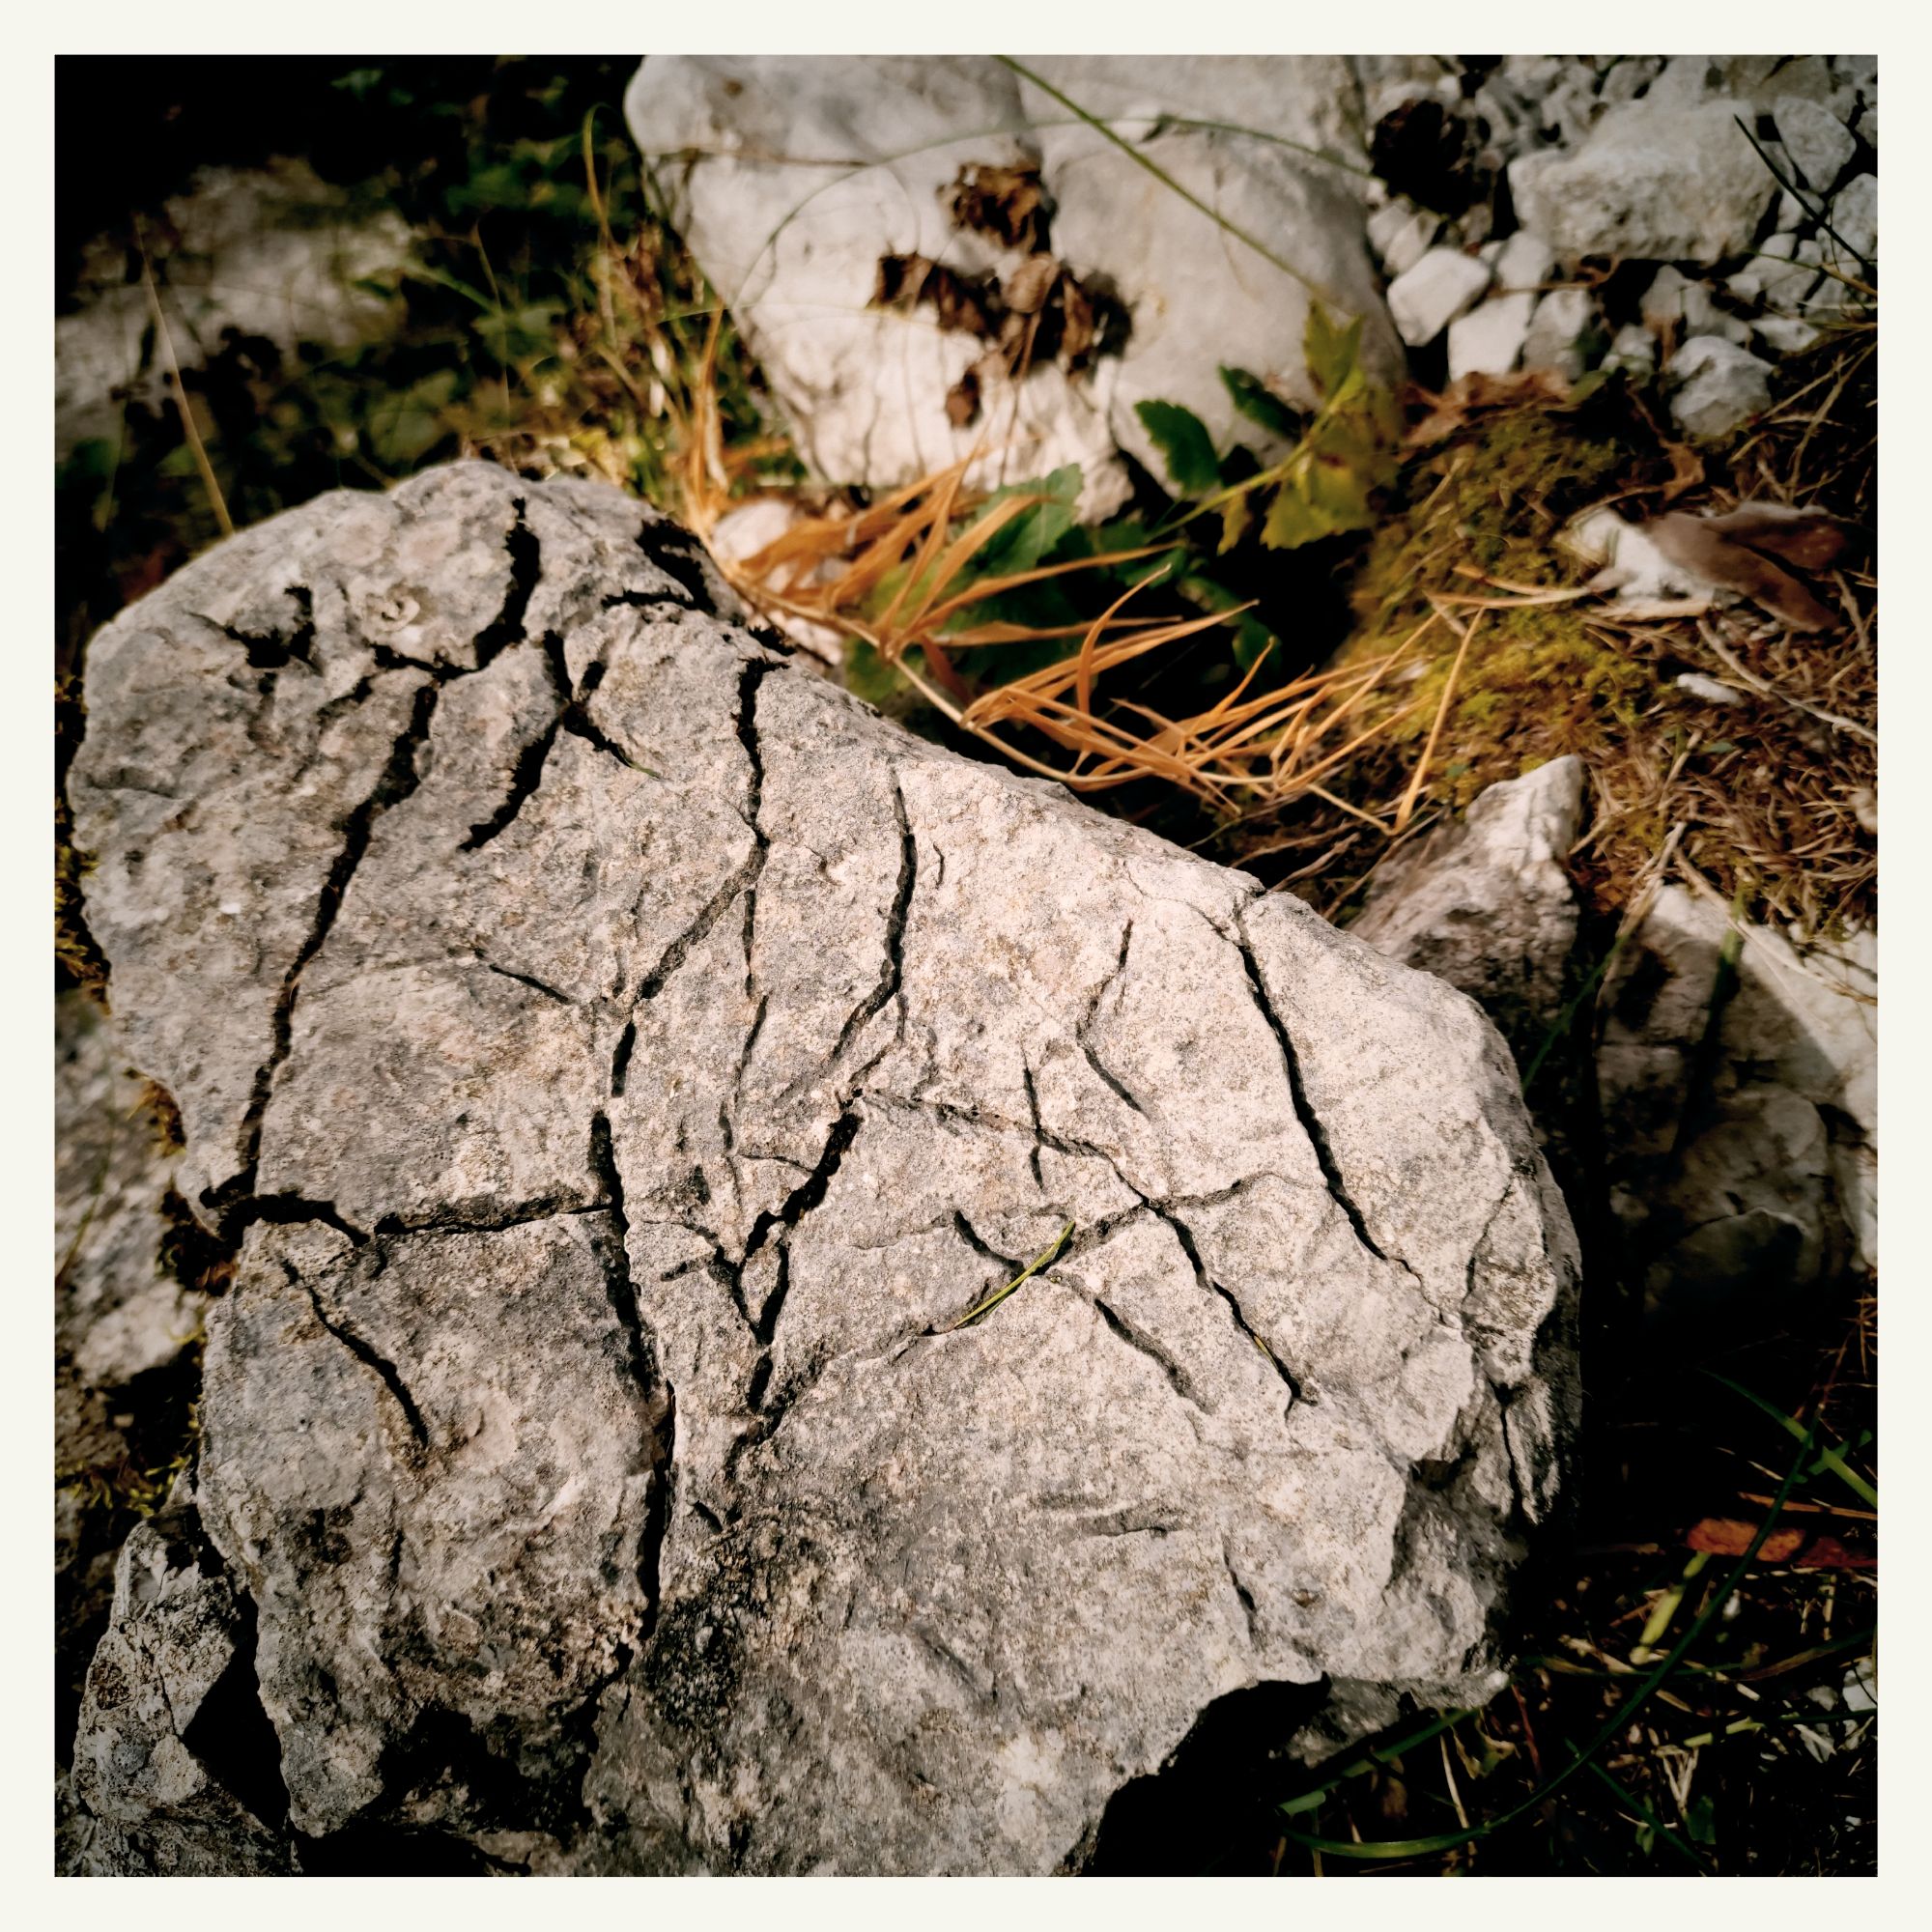 Marks on a mountain stone.